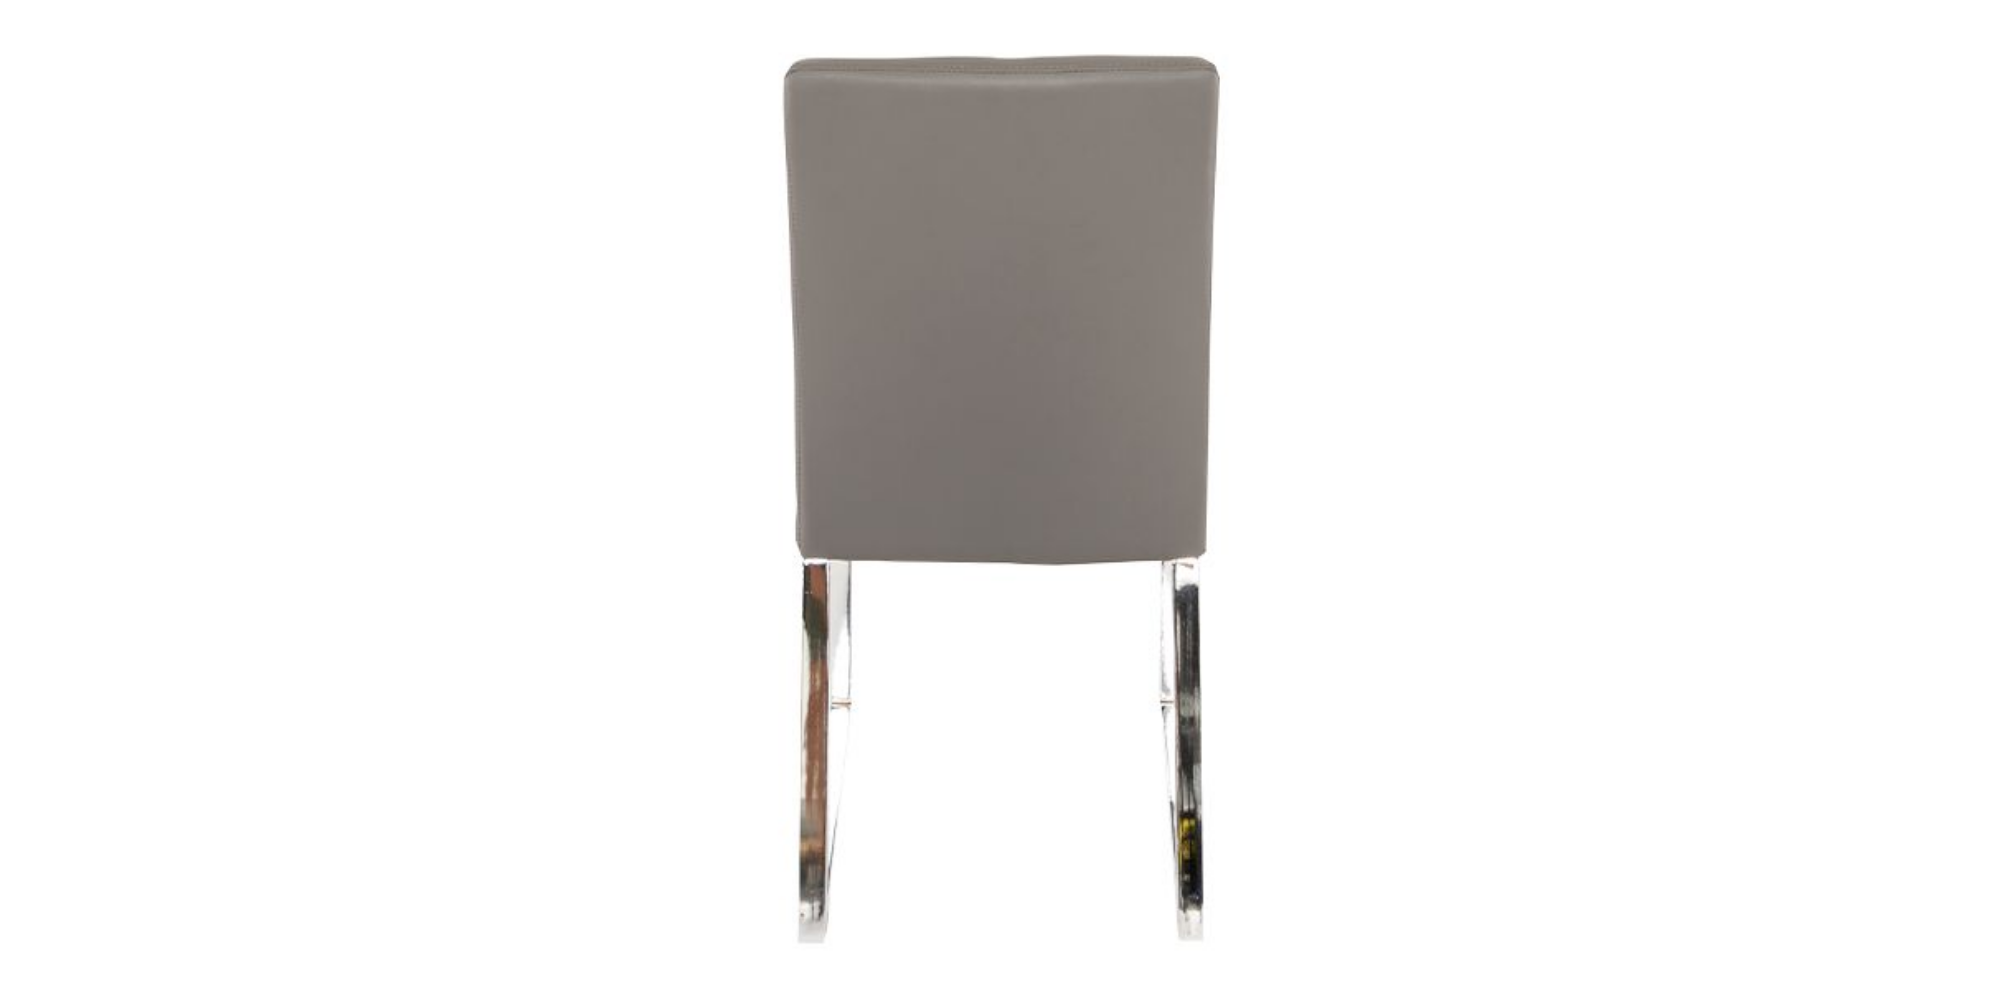 Niero Dining Chair Gray